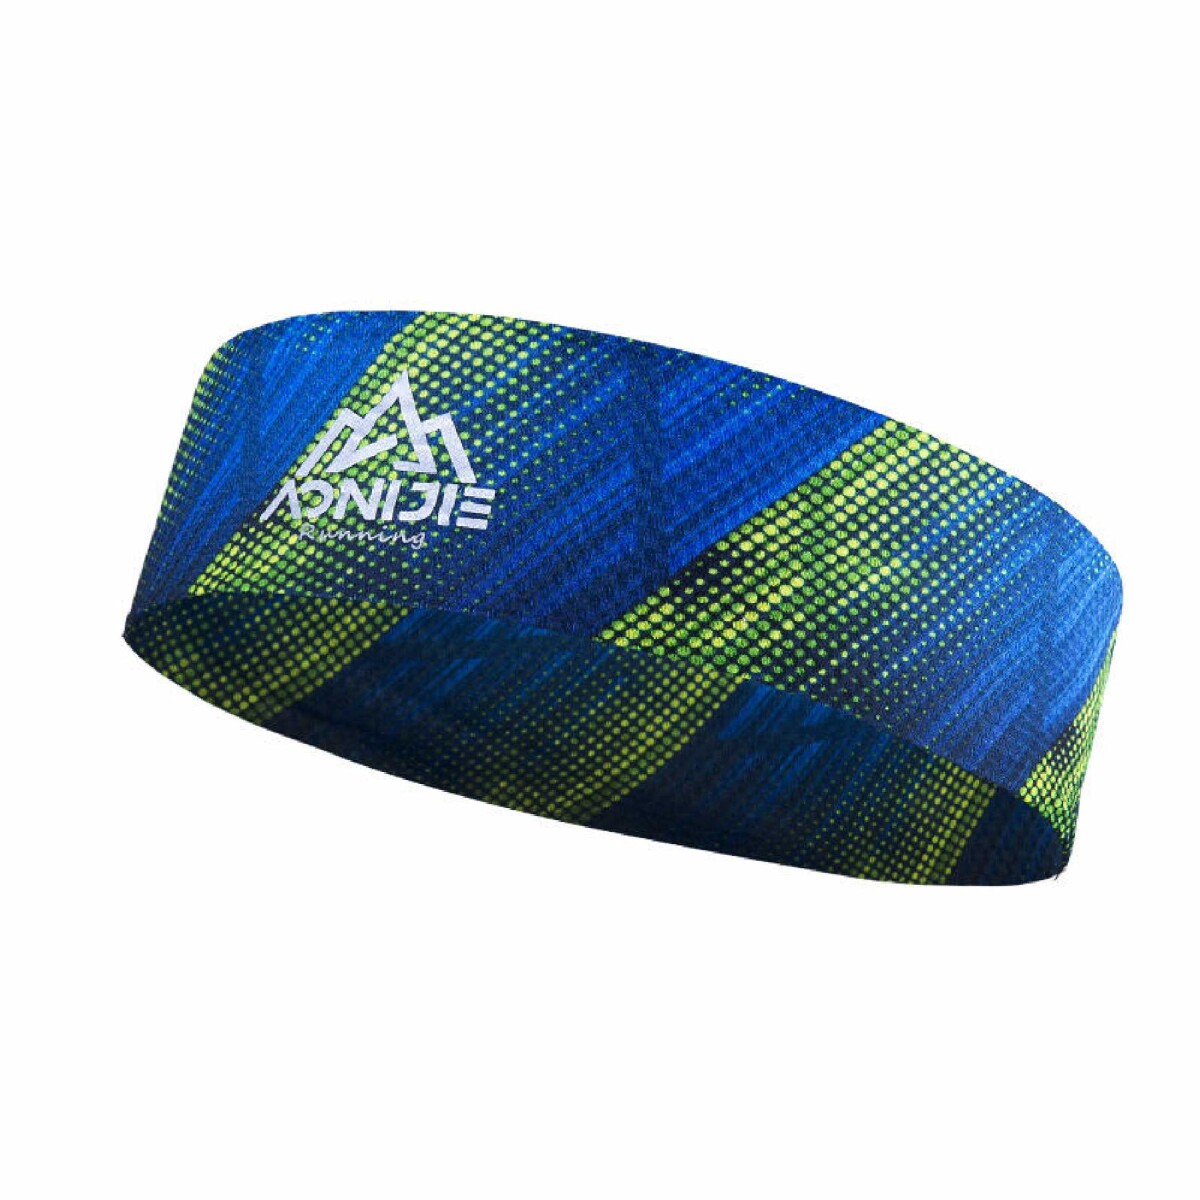 Vincha Deportiva Aonijie Headband - Azul y Verde 